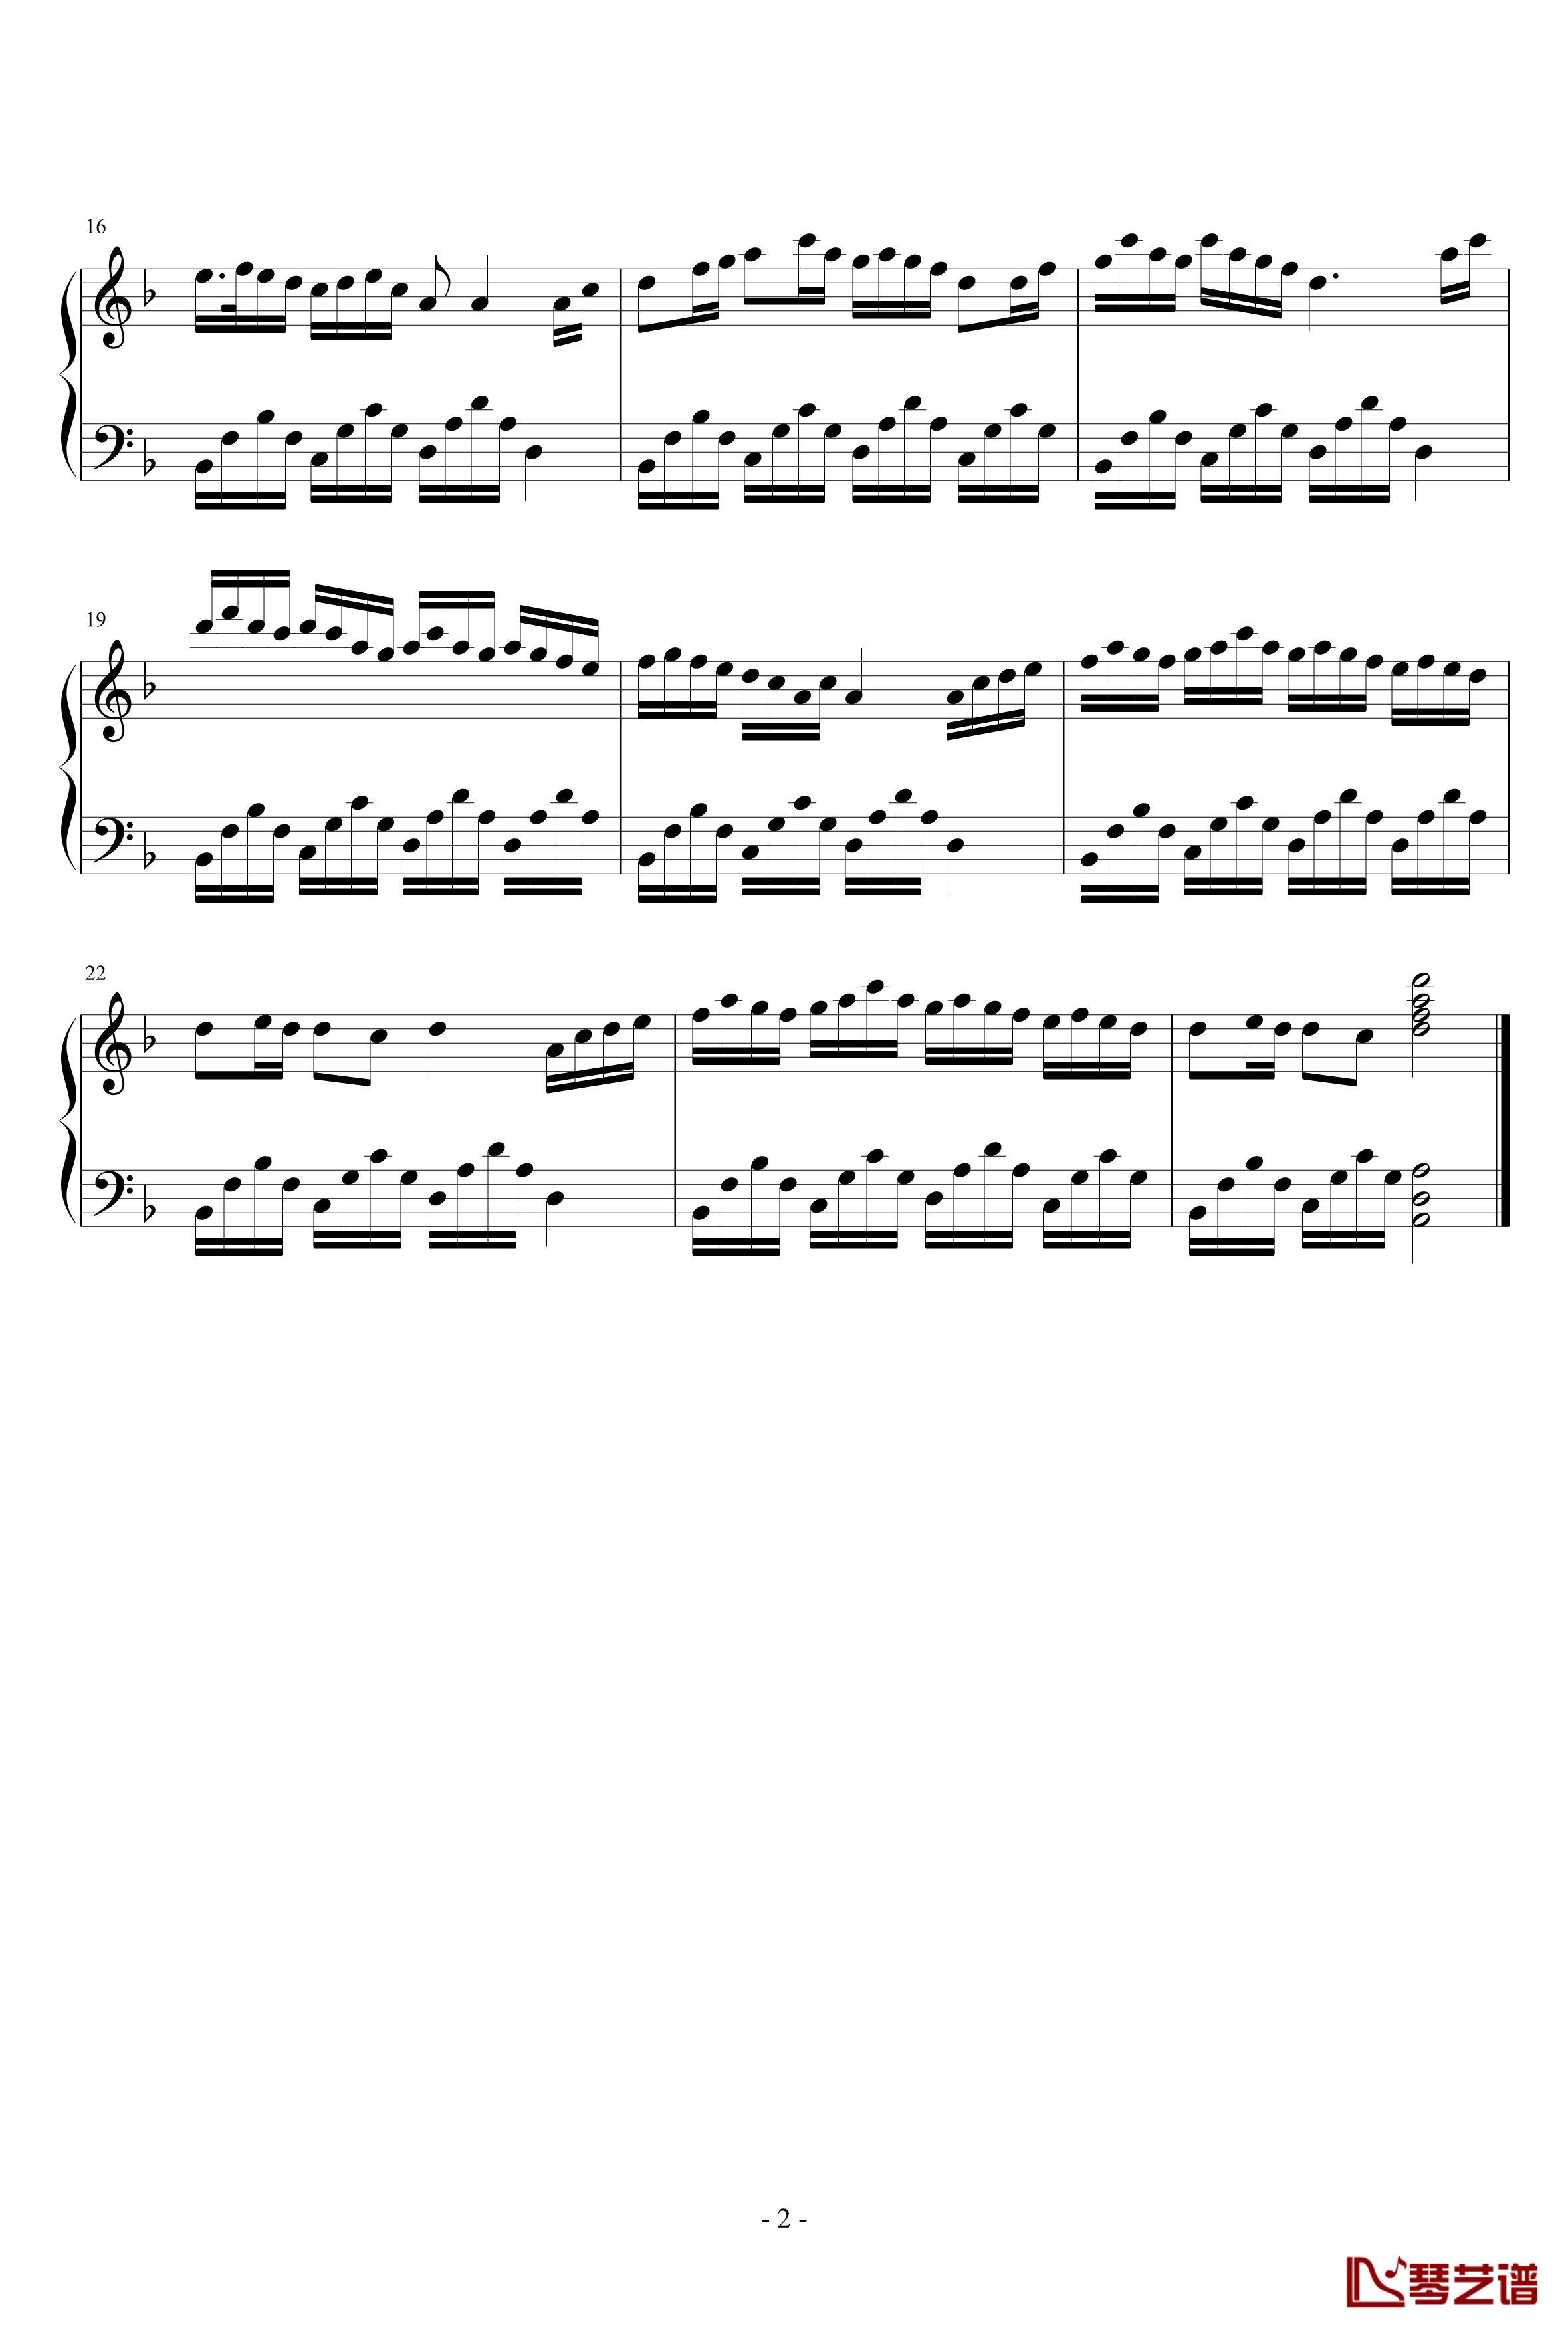 竹叶钢琴谱-贝多小芬2